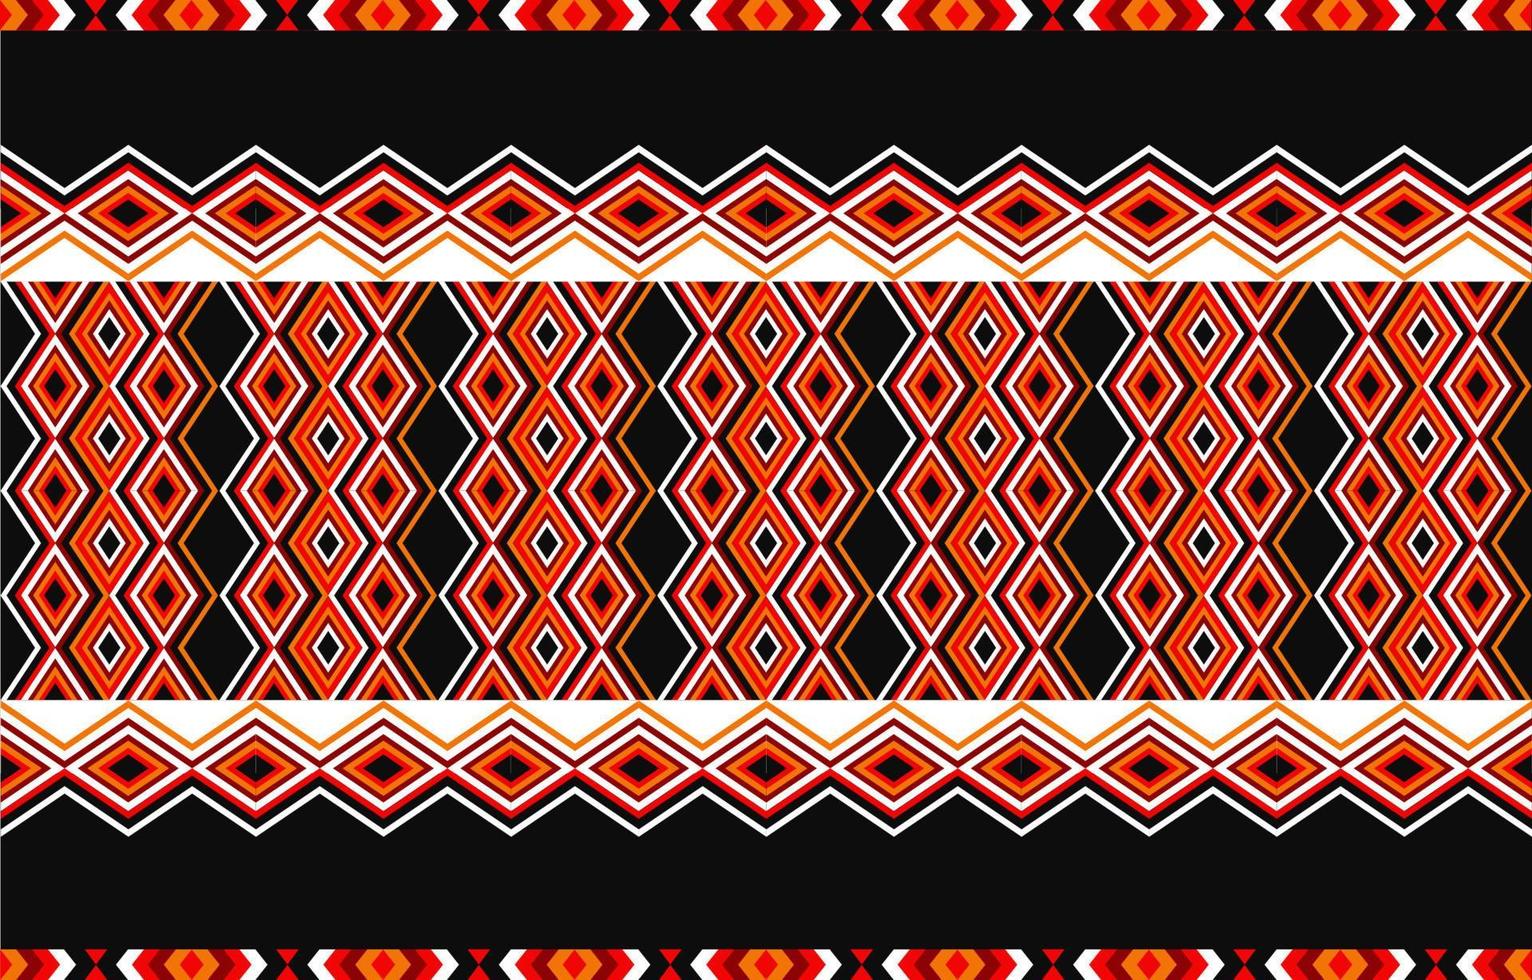 amerikansk tribal etniskt mönster traditionell design för matta, tapeter, inslagning, batik, tyg, gardin, bakgrund, kläder, vektor illustration broderi stil.